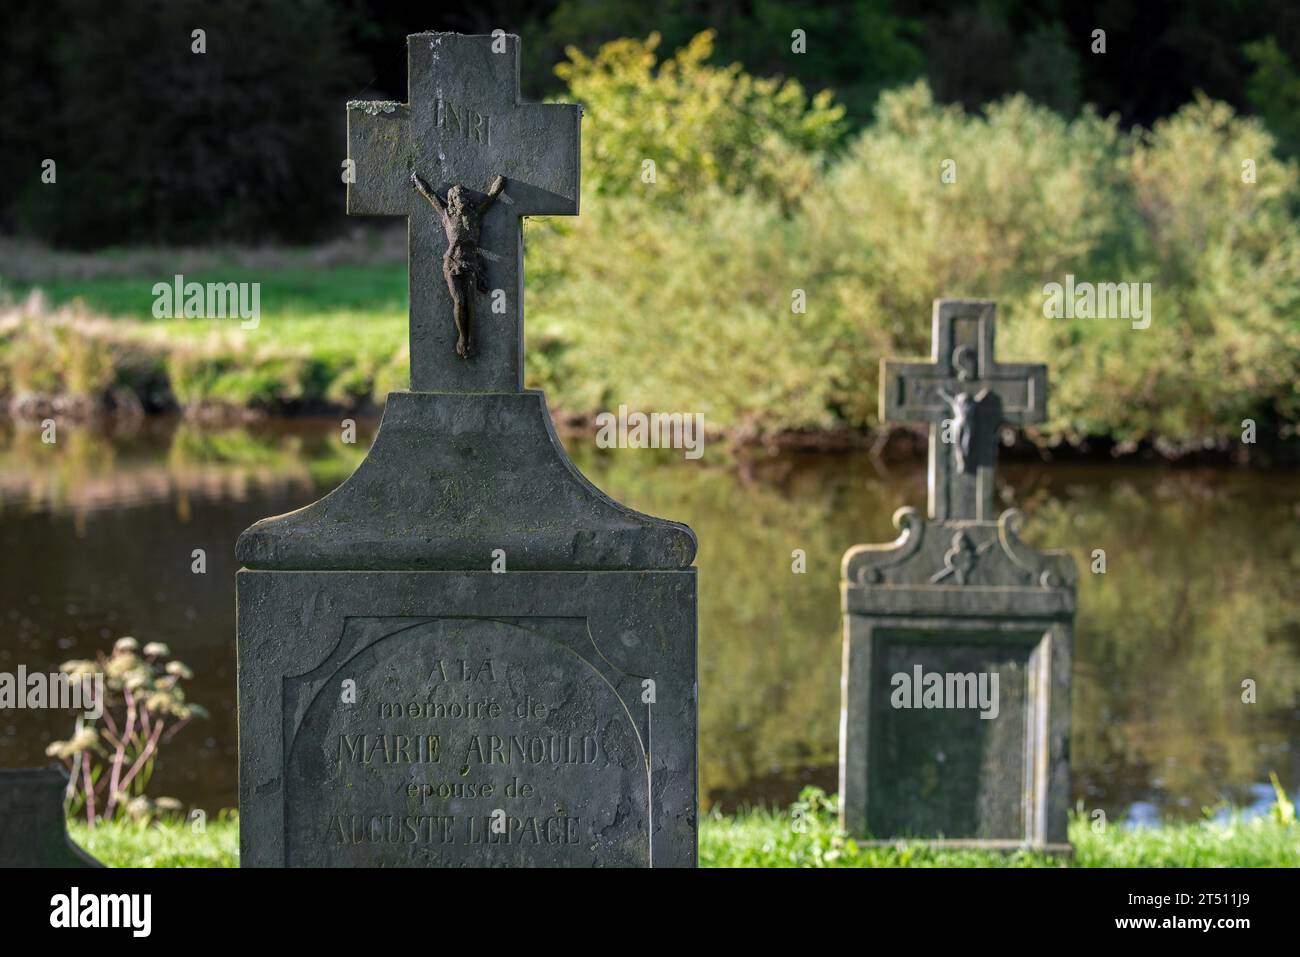 Le Vieux Cimetière, ancien cimetière le long de la Semois avec des pierres tombales des 16e et 17e siècles dans le village Mortehan, Bertrix, Luxembourg, Belgique Banque D'Images